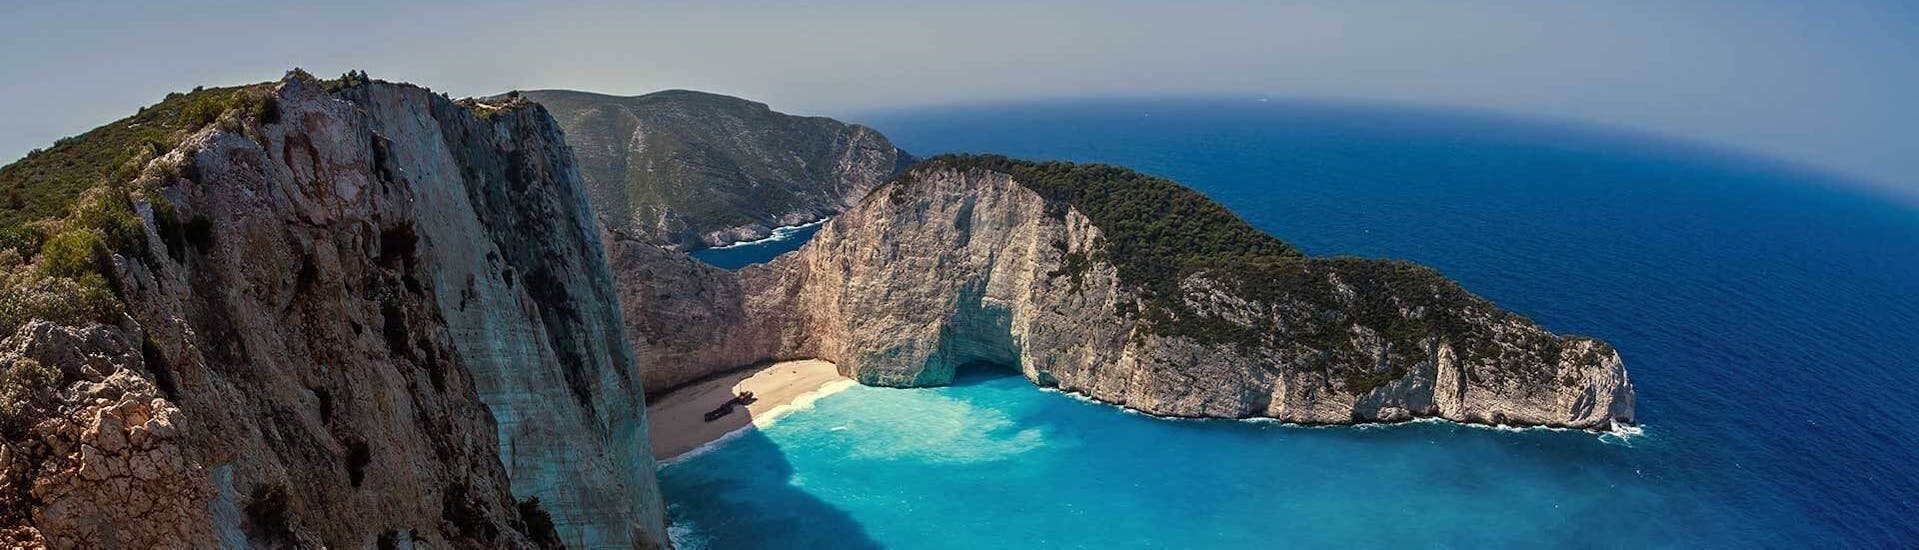 Baie de Zakynthos durant la balade en bateau aux grottes bleues, Navagio et la plage de Xigia avec baignade.